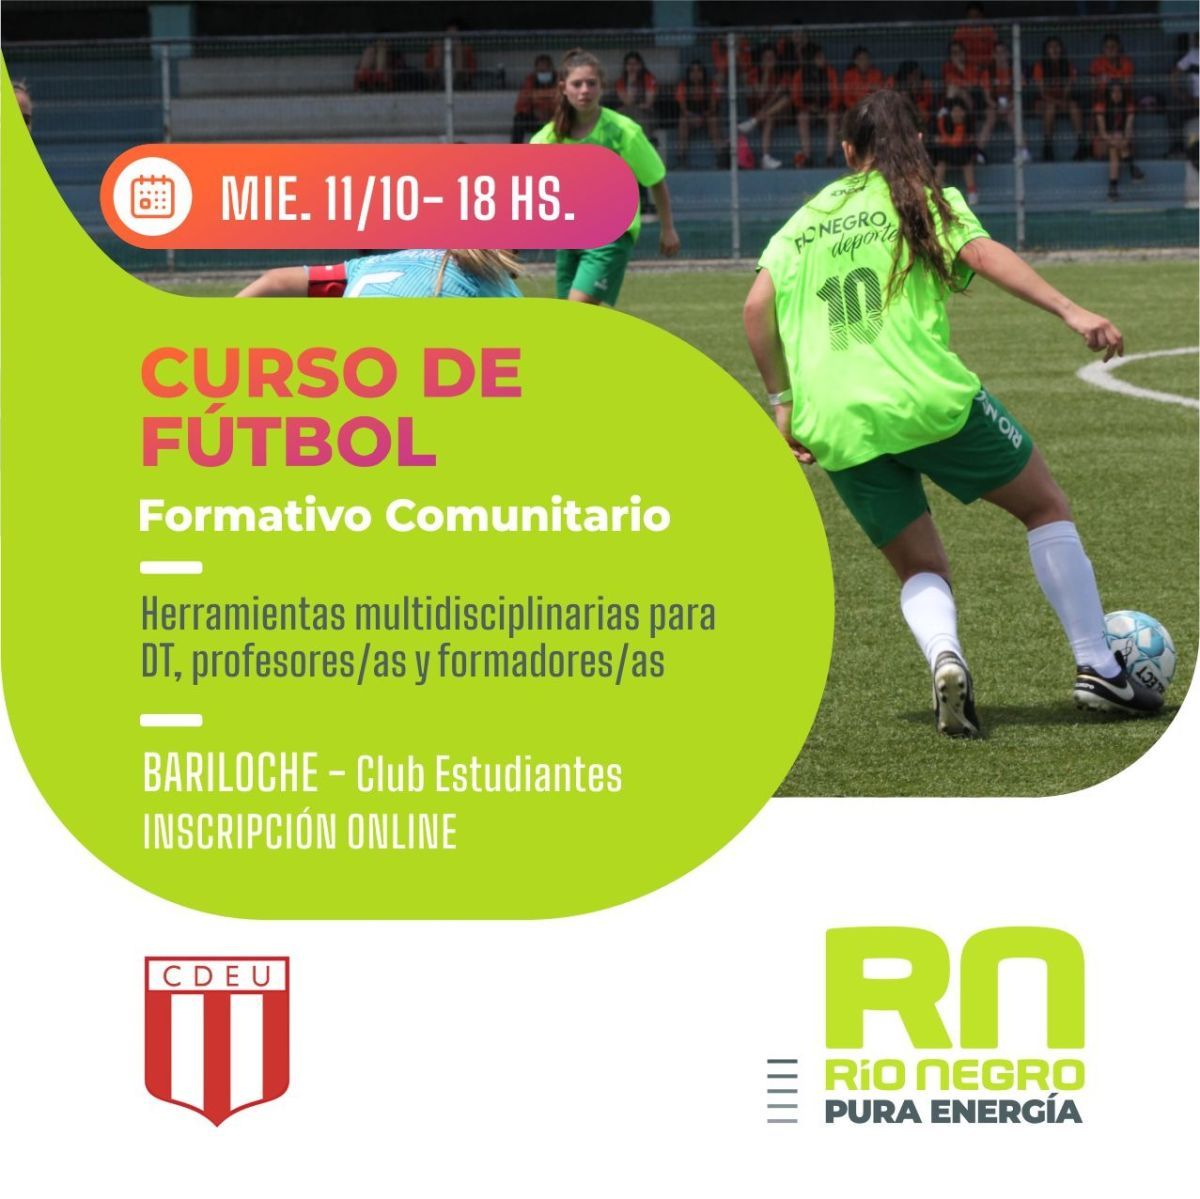 Invitan a participar de un curso de DT de fútbol formativo comunitario